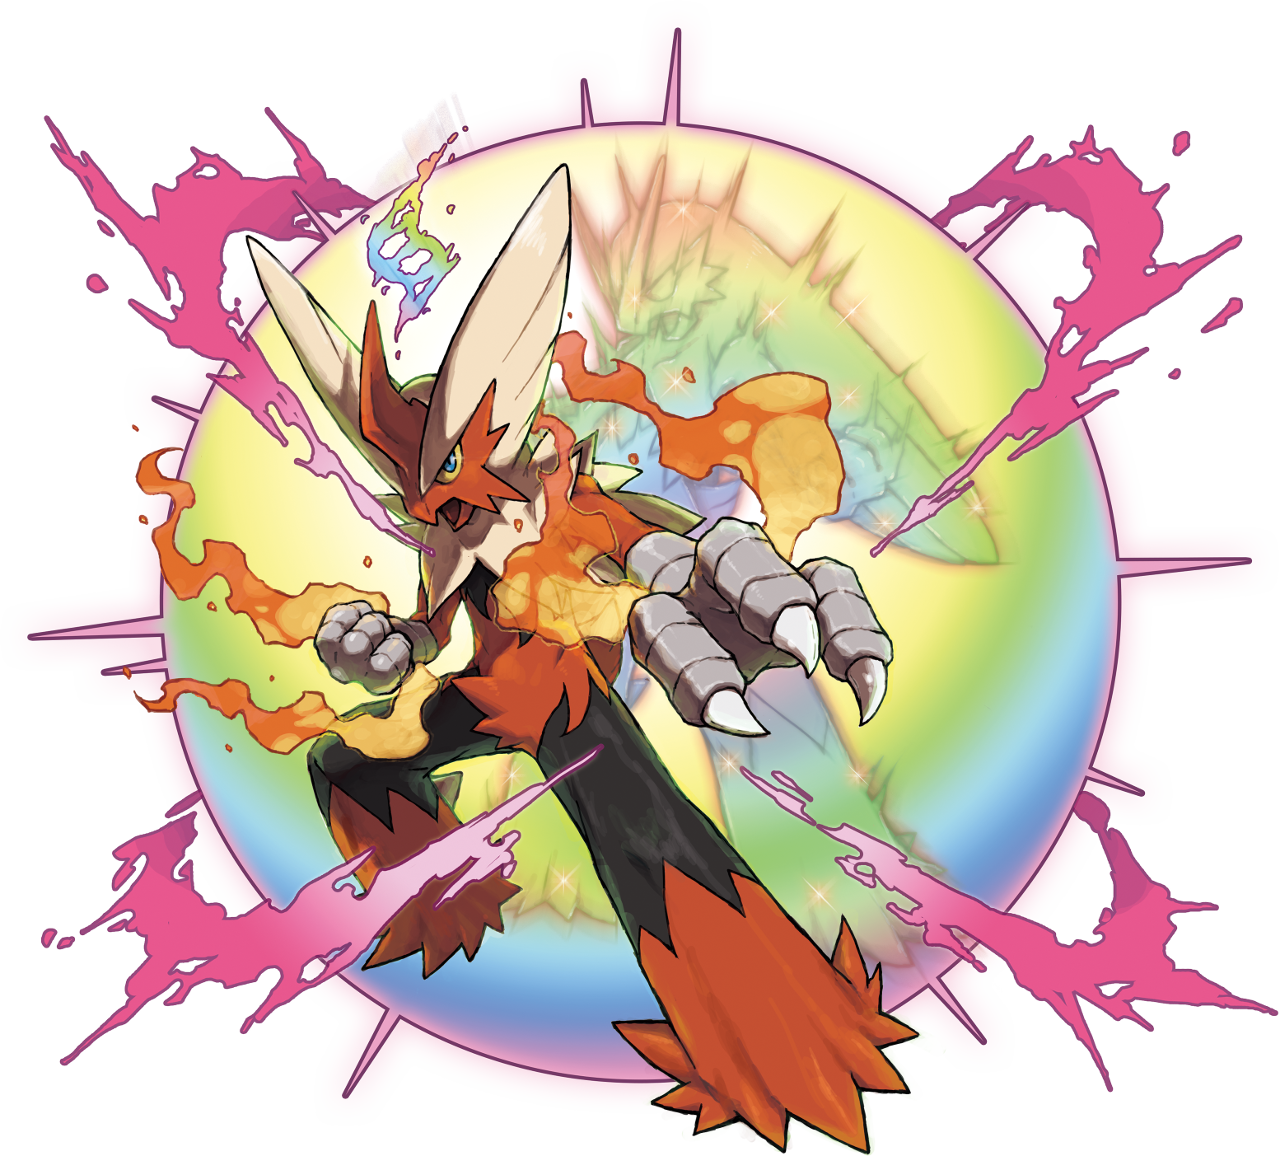 Pokerag - [ 🥊 ] BATALHA POKÉMON - MEGA EVOLUÇÕES Mega Alakazam #065- Pokémon  Psíquico do tipo psíquico. O Alakazam Mega evolui ao segurar a Alakazite.  Ao fazer isso, além da sua